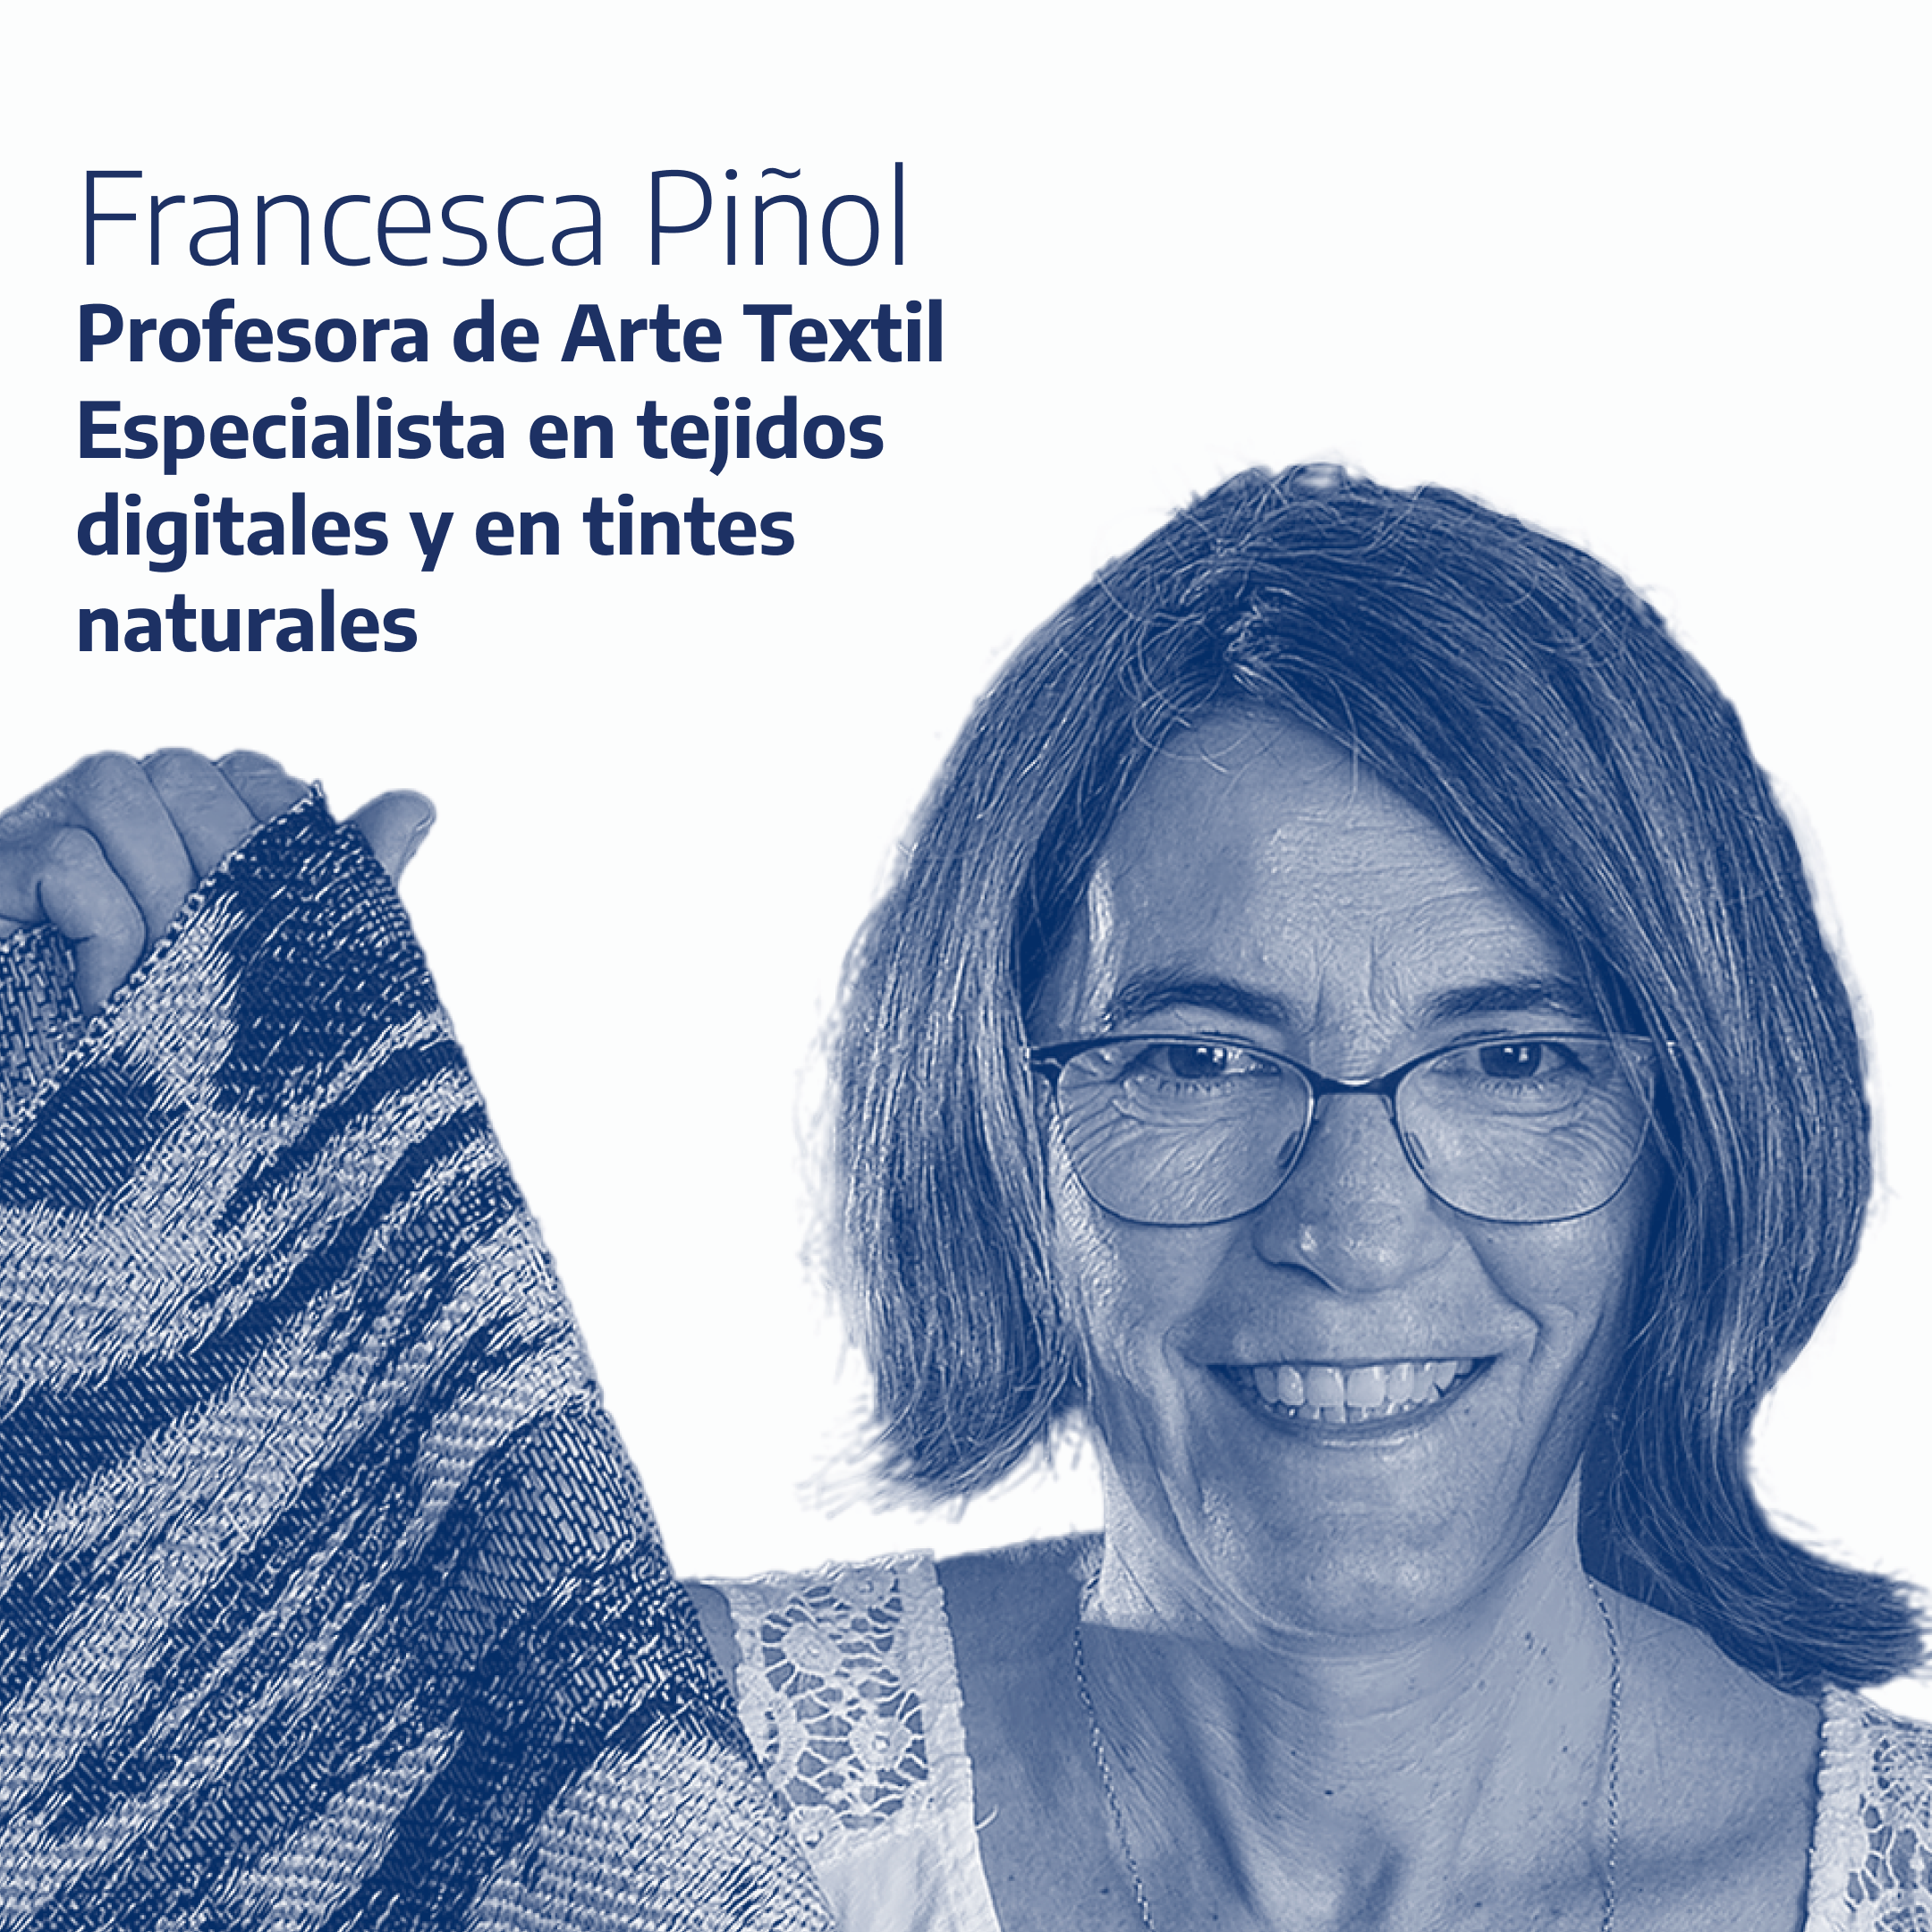 Francesca Piñol - Profesora de Arte Textil - Especialista en tejidos digitales y en tintes naturales